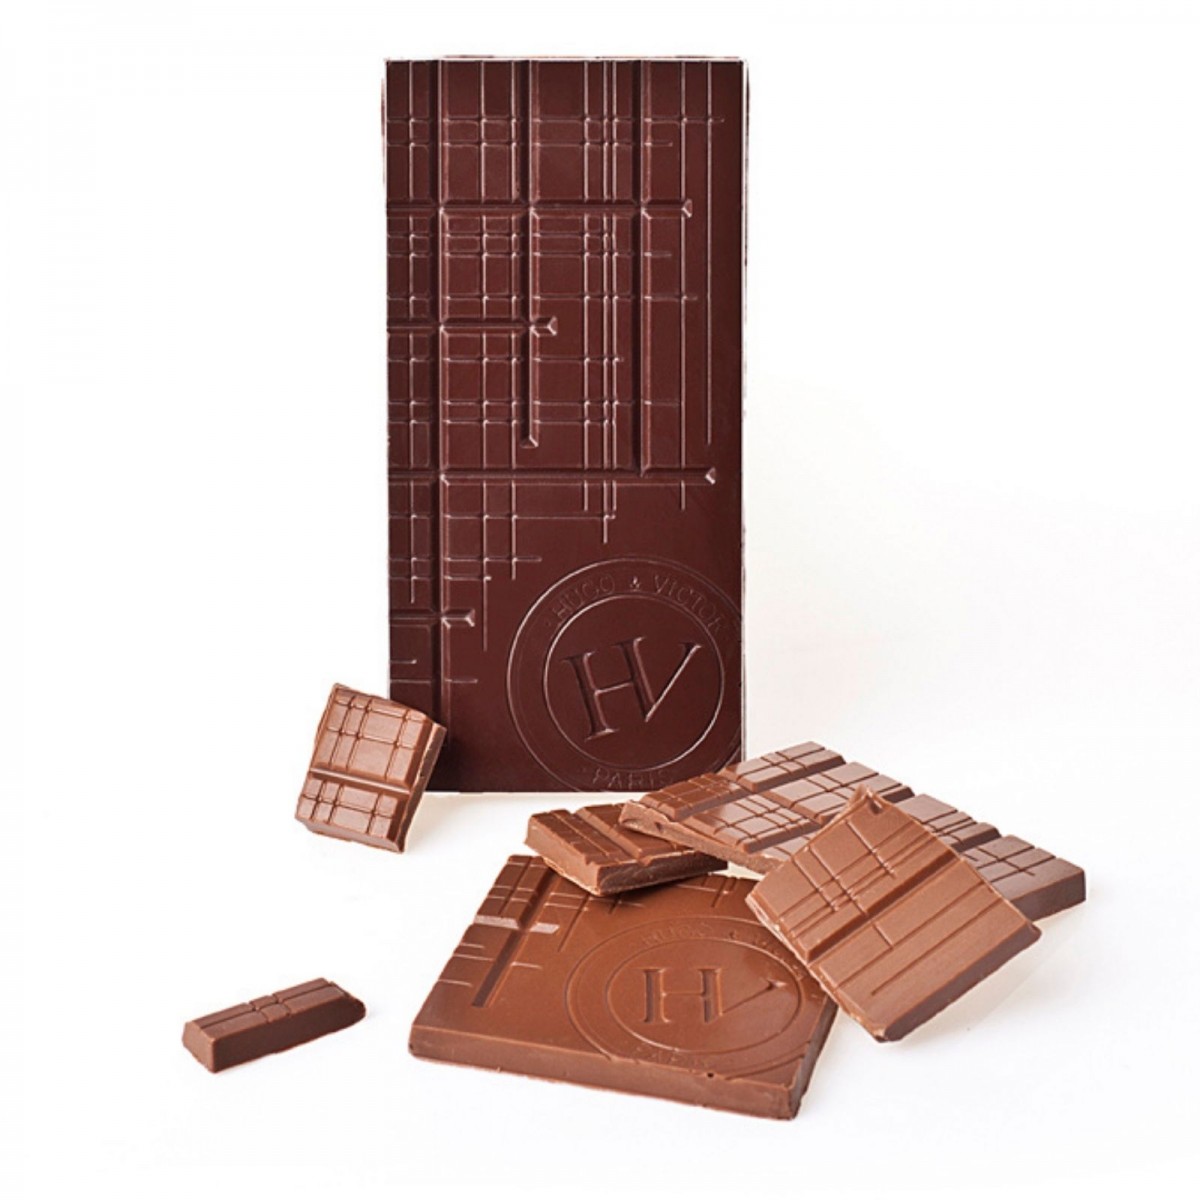 Tablette Belize 75% chocolat noir sans lécithine - Chocolatier de Luxe